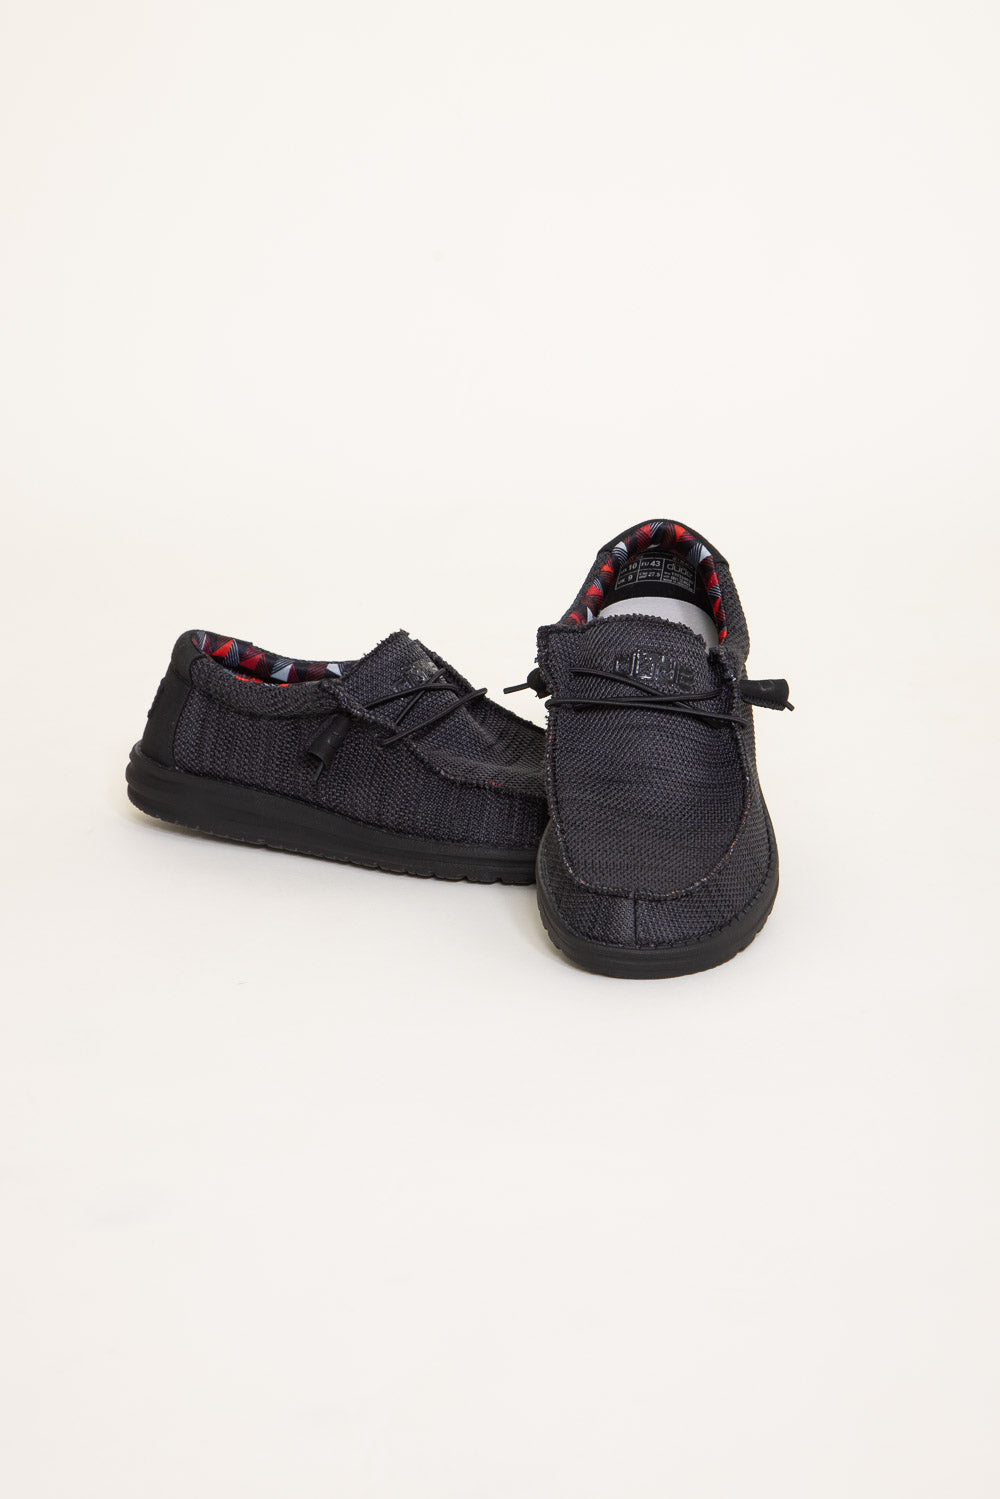 HEYDUDE Men's Wally Sox Funk Shoes in Jet Black – Glik's